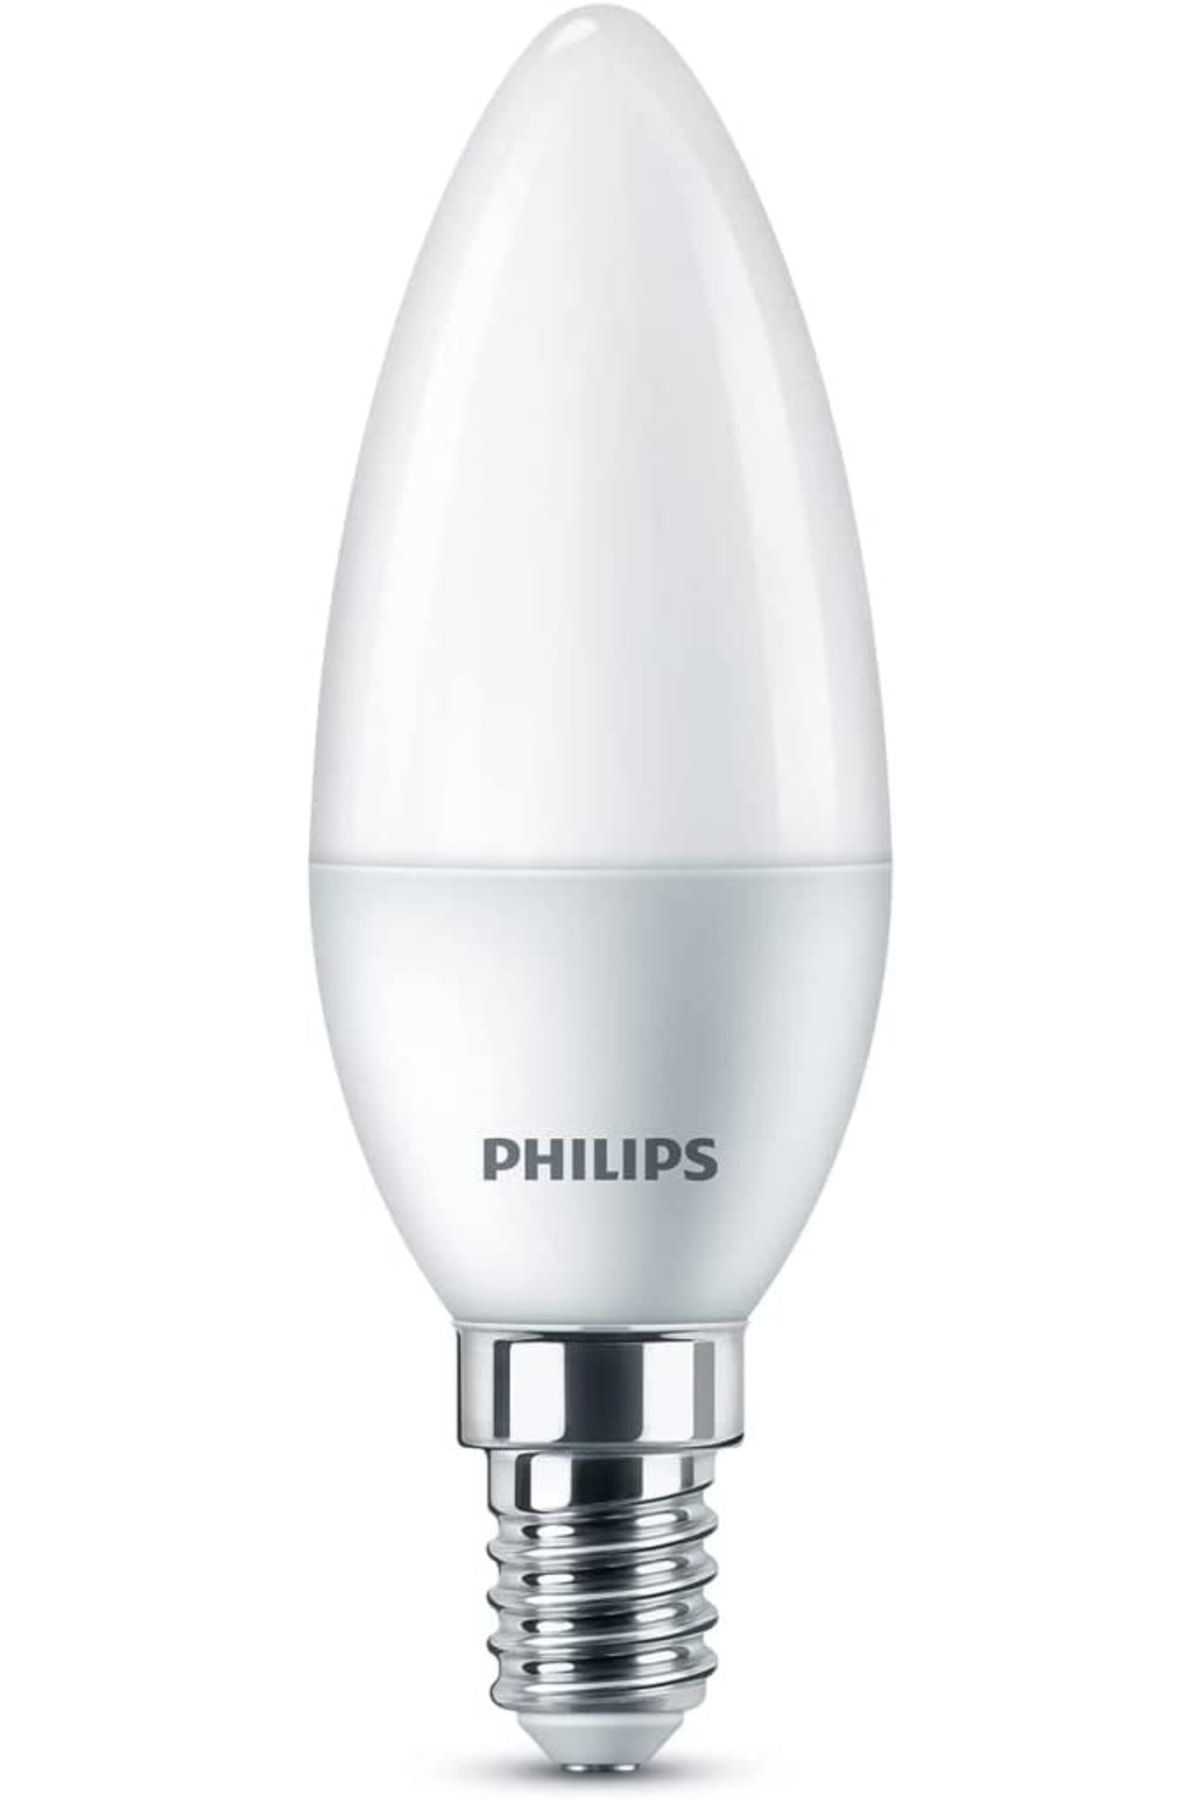 Philips Ledcandle 40w B35 E14 Sarı Işık